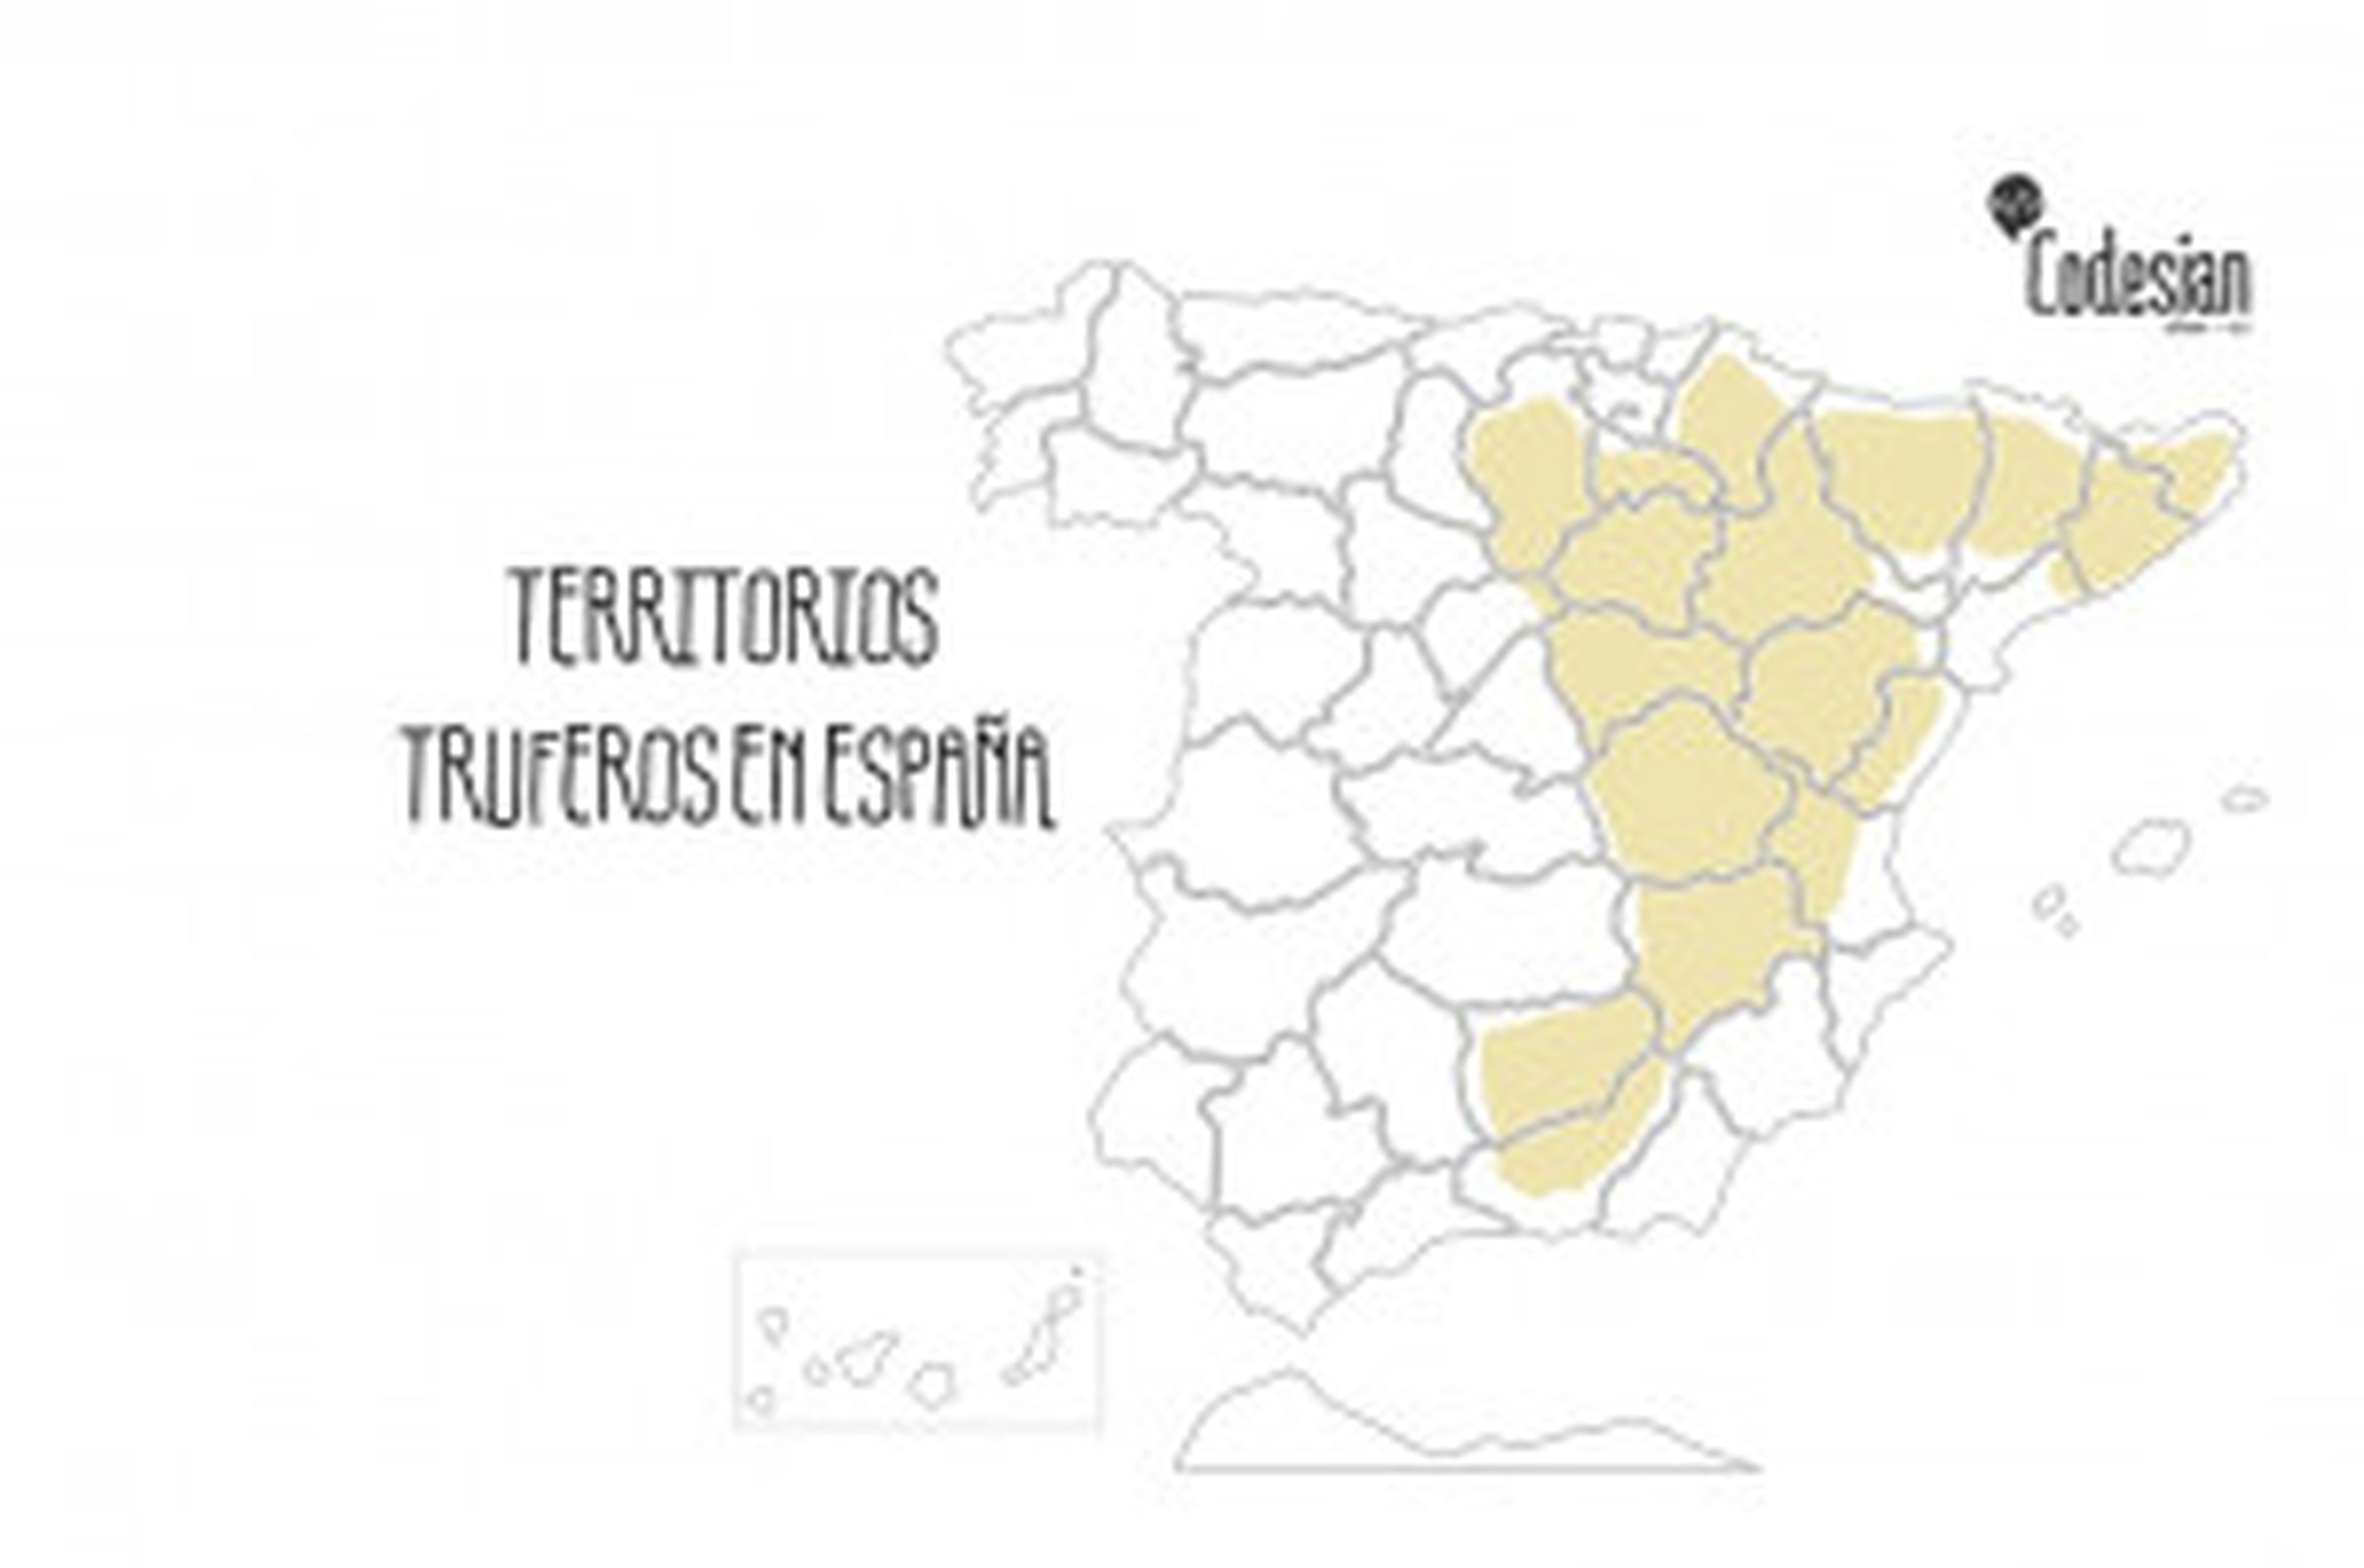 El Mapa de plantaciones truferas de España.